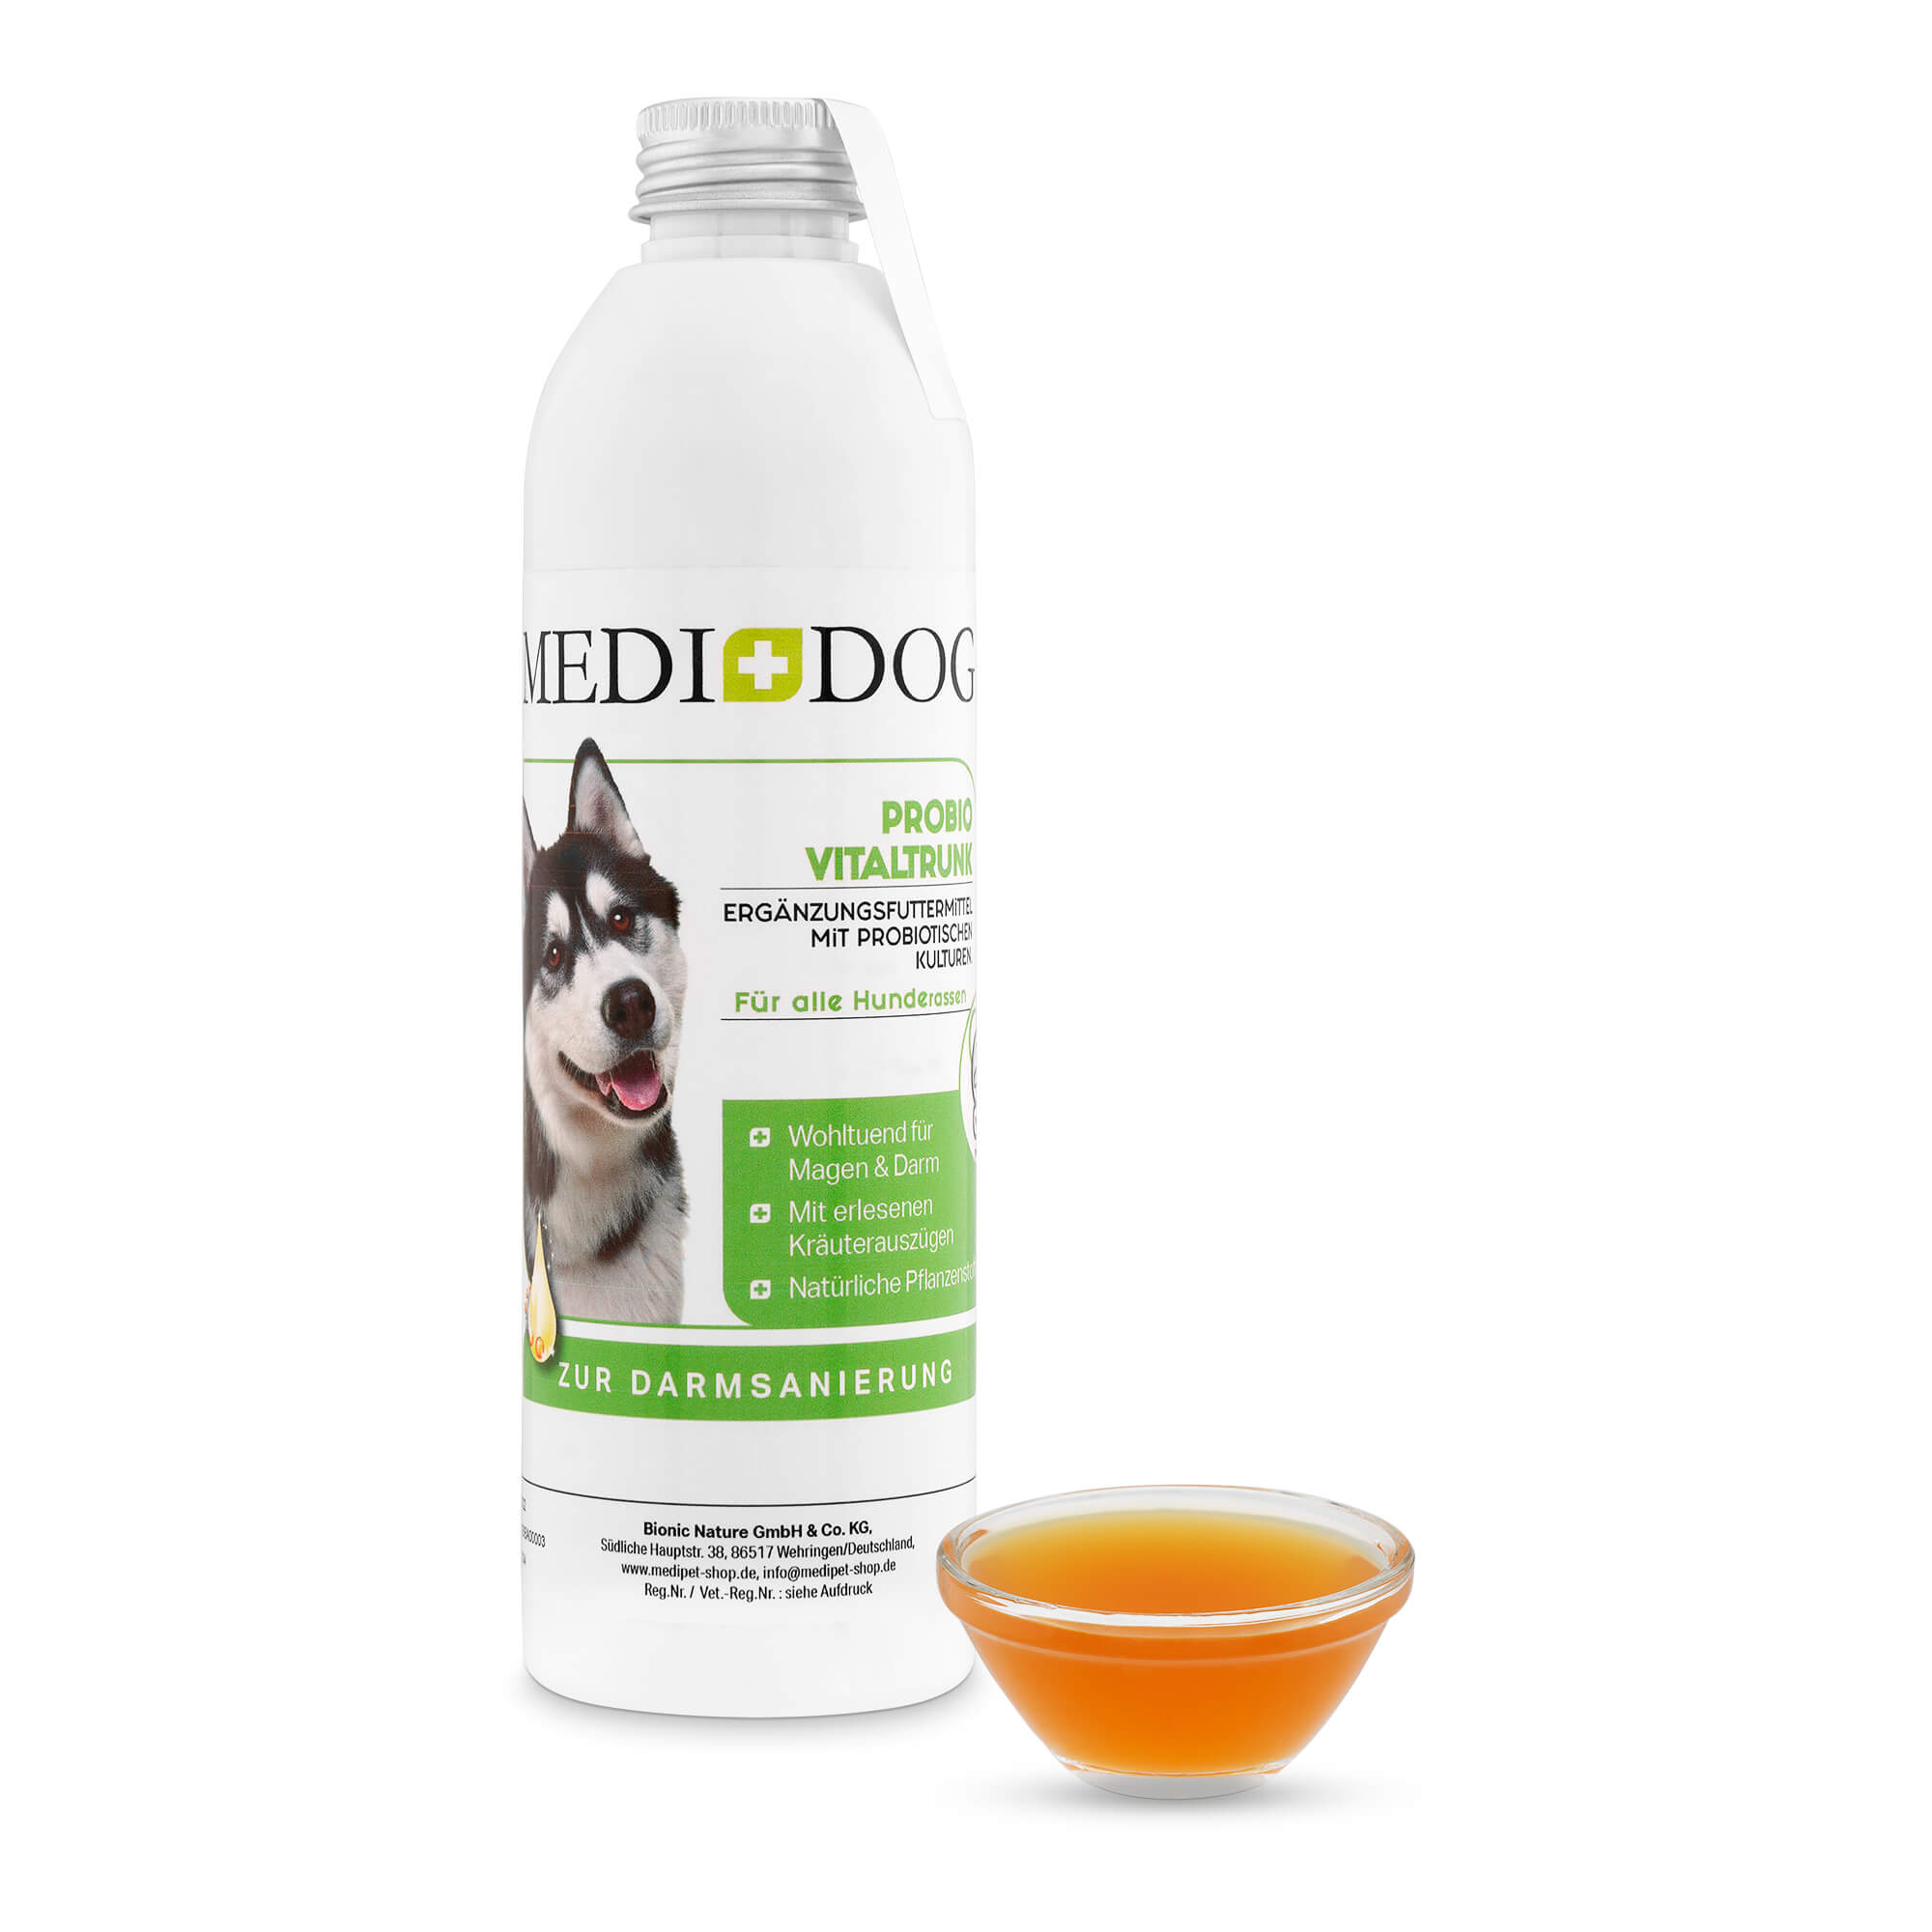 Medidog Probio Vitaltrunk - Mineralstoffe und Kräuter für Magen und Darm für Hunde